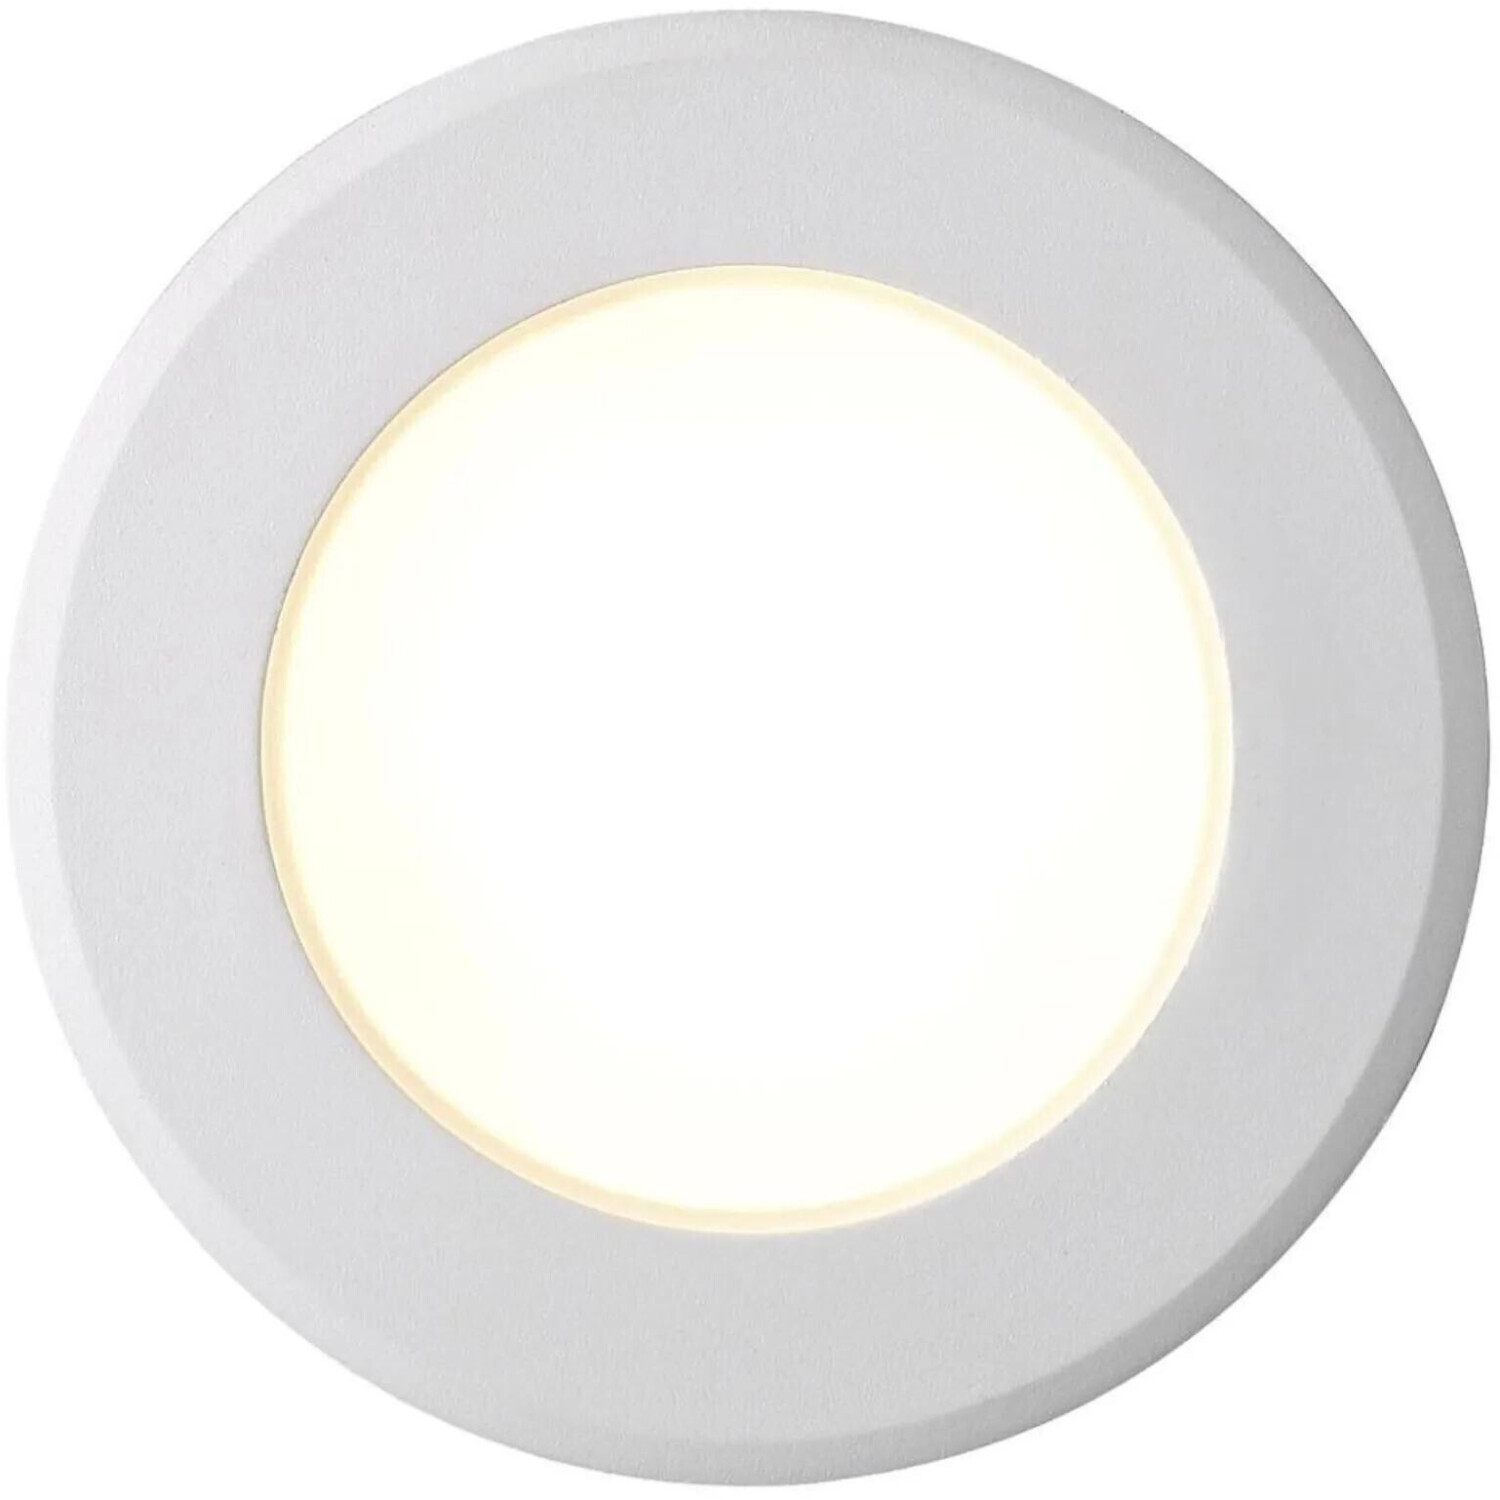 Nordlux LED Deckeneinbauspot Birla weiß dimmbar IP44 weiß ab 13,95 € |  Preisvergleich bei